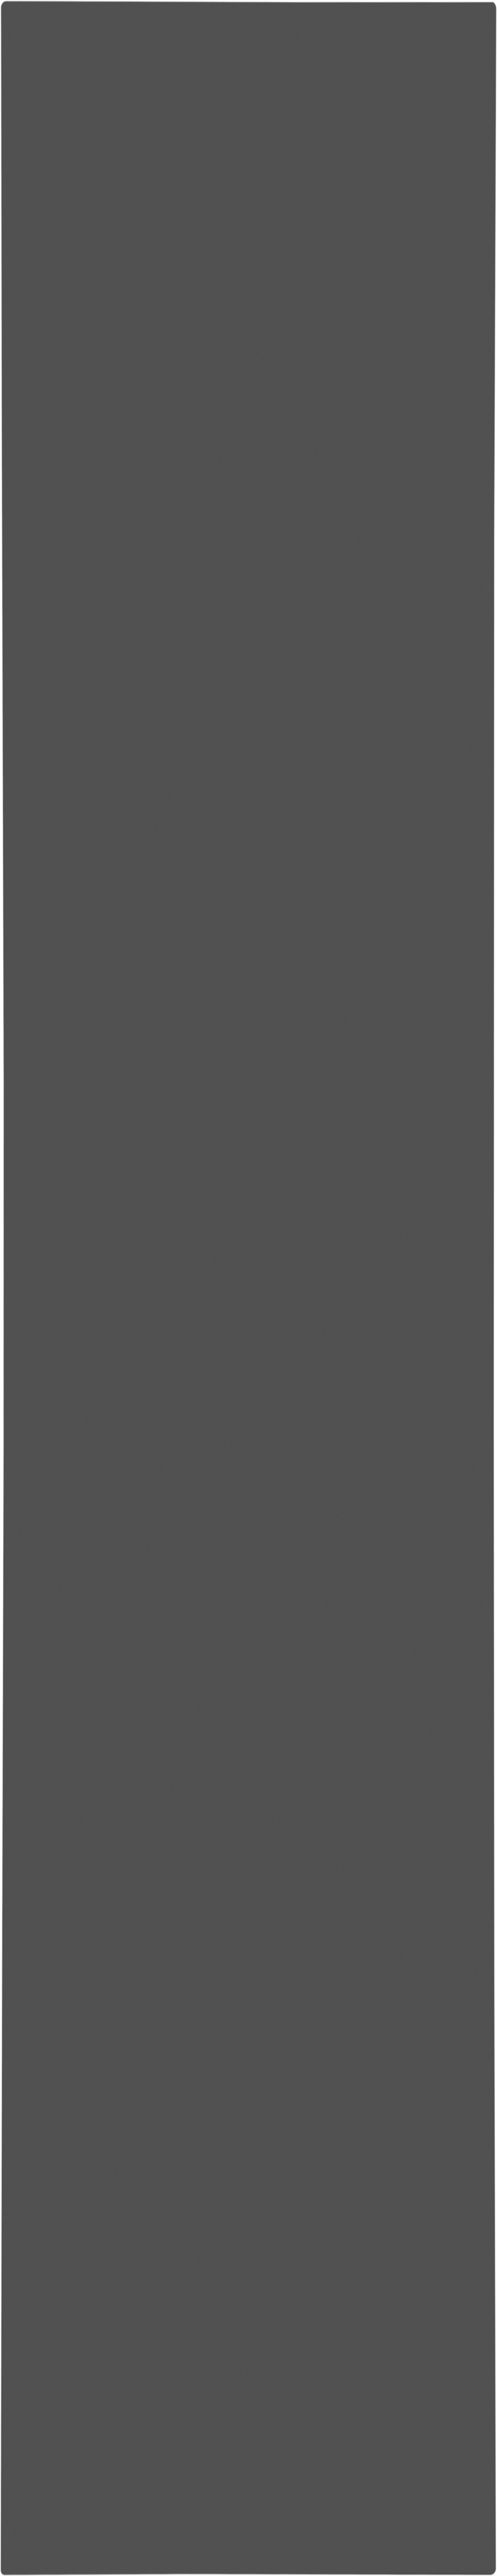 Puerta abatible armario lucerna gris oscuro 60x240x1,9 cm